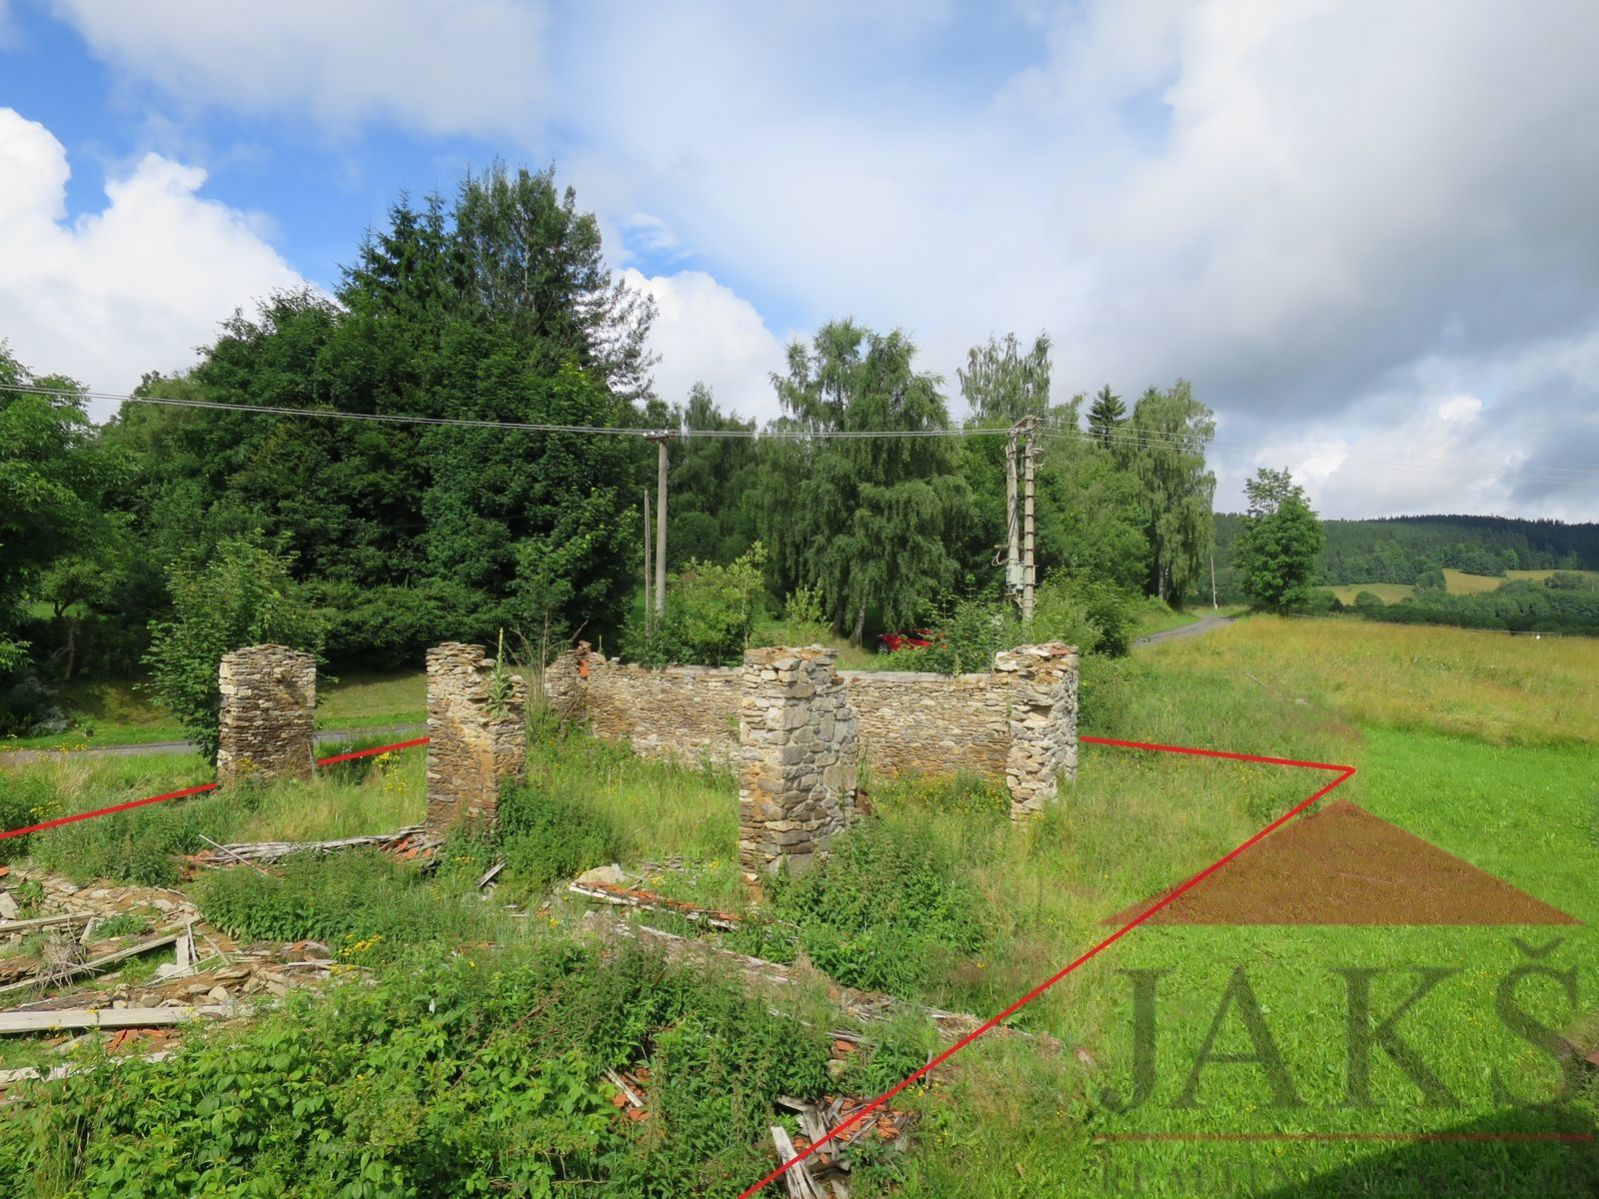 Onen Svět u Čachova; zbořeniště stodoly 410 m2 na konci klidné osady, obrázek č. 1